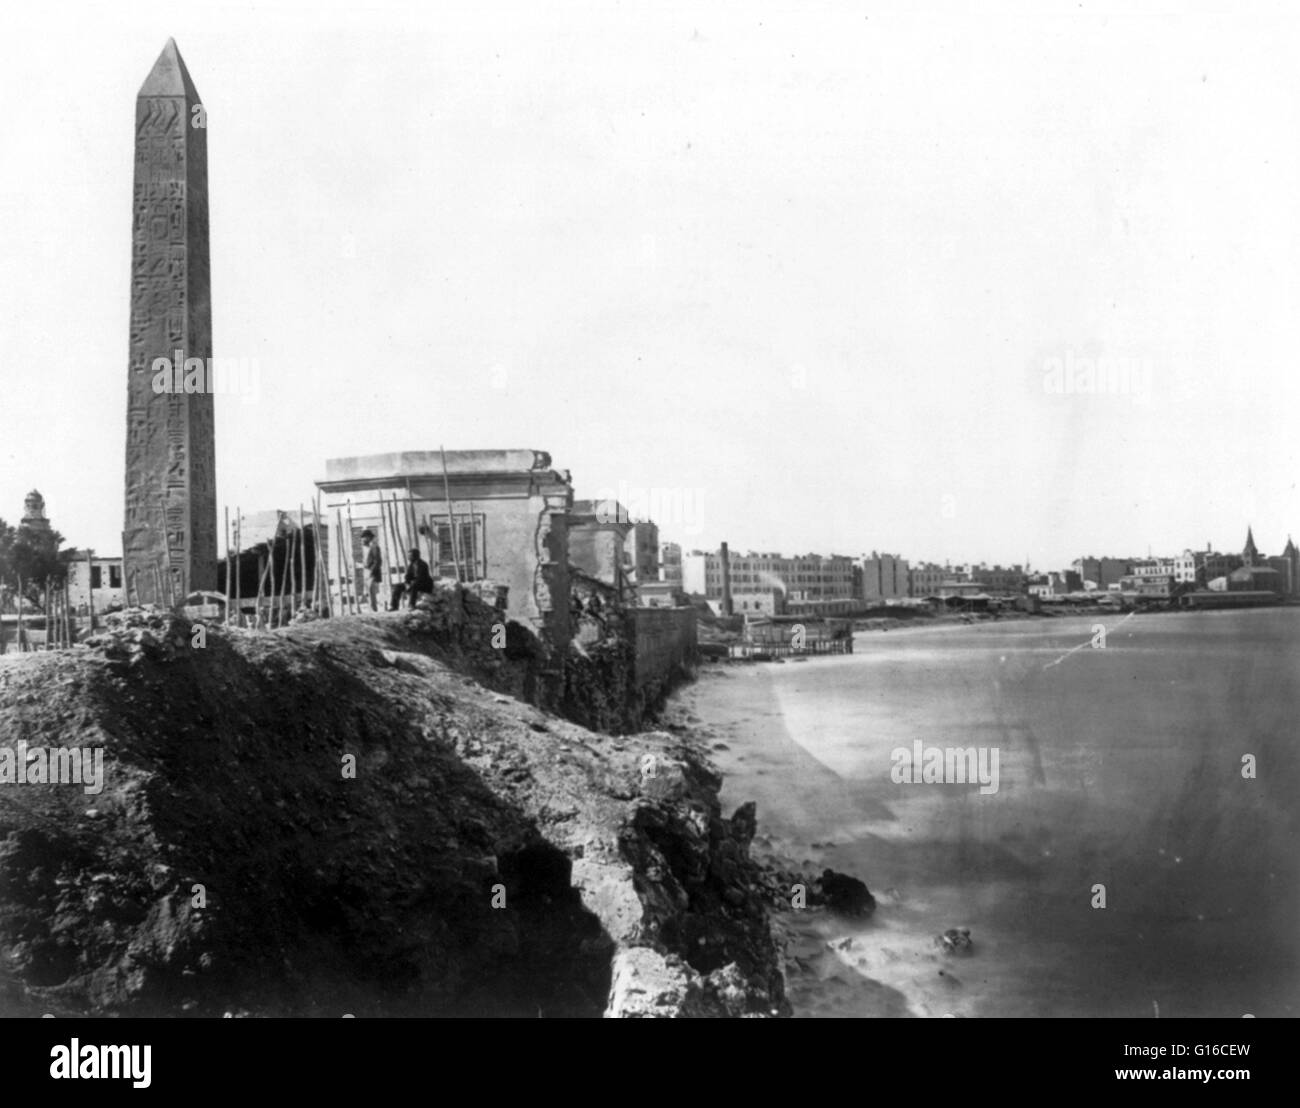 Obelisk in Alexandria gemeinhin Kleopatras Nadel, 1880. Kleopatras Nadel ist der populäre Name für jede der drei antiken ägyptischen Obelisken in London, Paris und New York City während des 19. Jahrhunderts wieder aufgebaut. Alle drei Nadeln sind echte Ancien Stockfoto